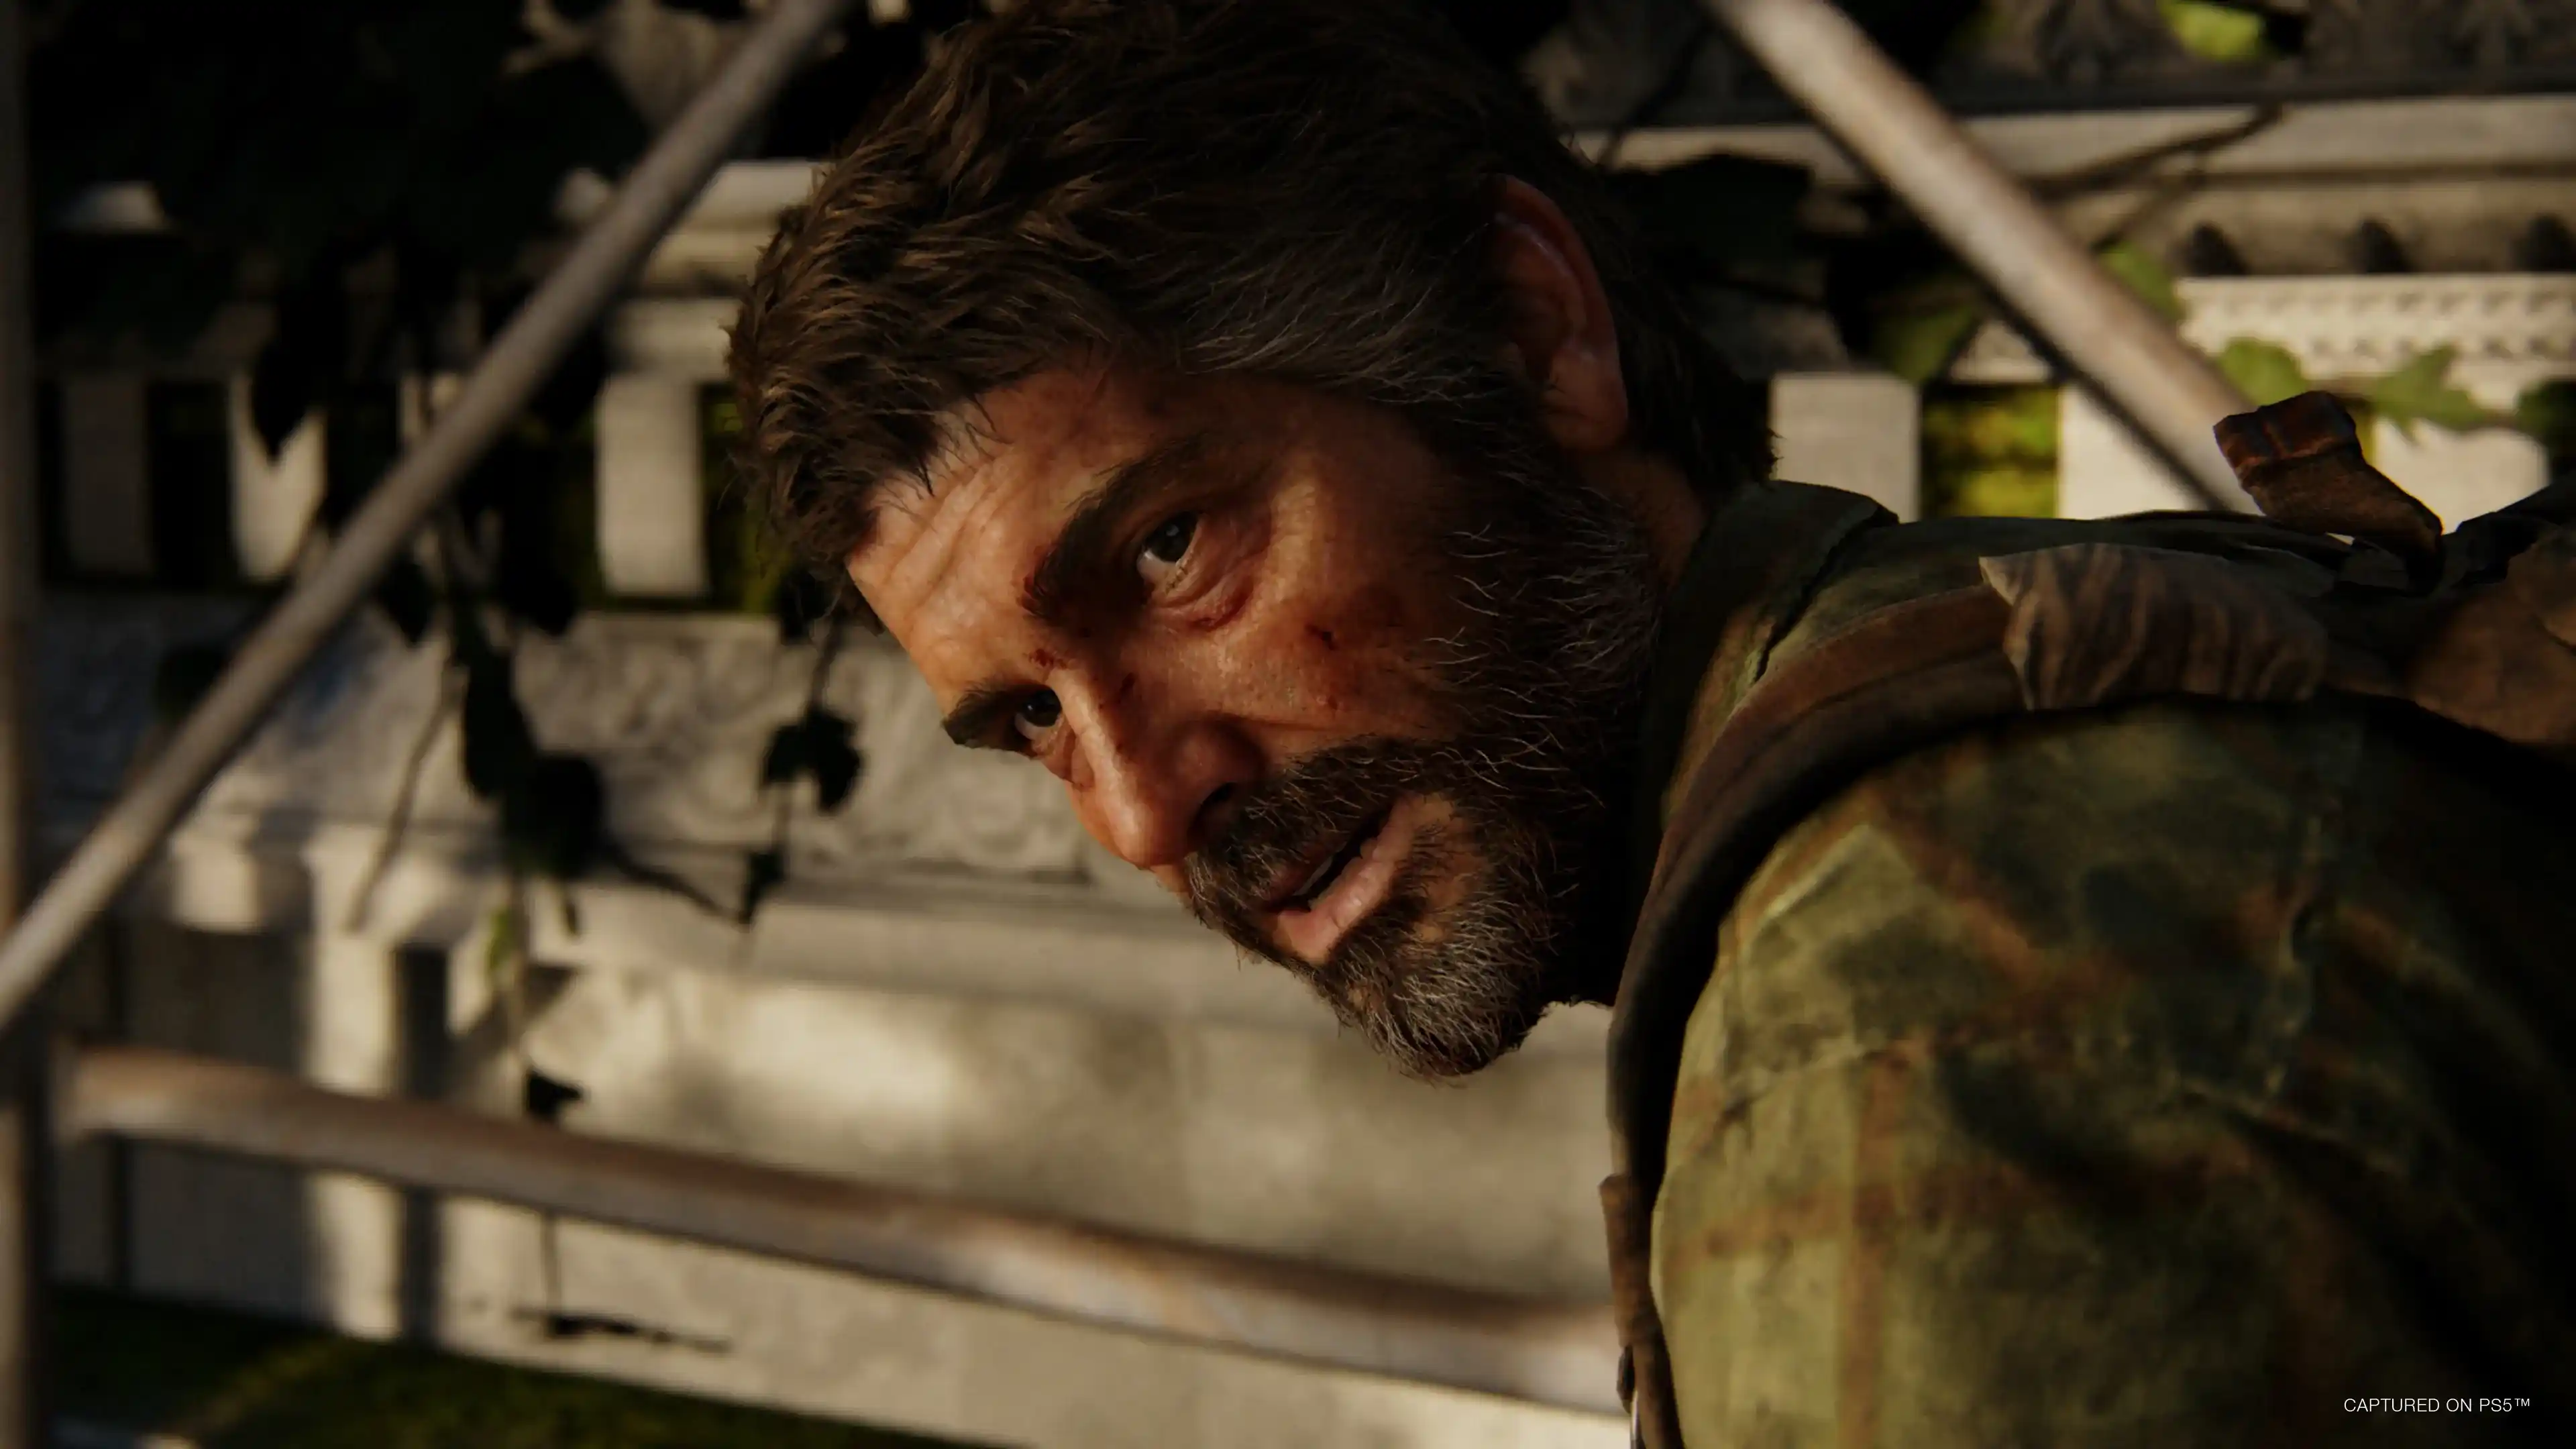 اکانت قانونی The Last of Us Part I برای PS5